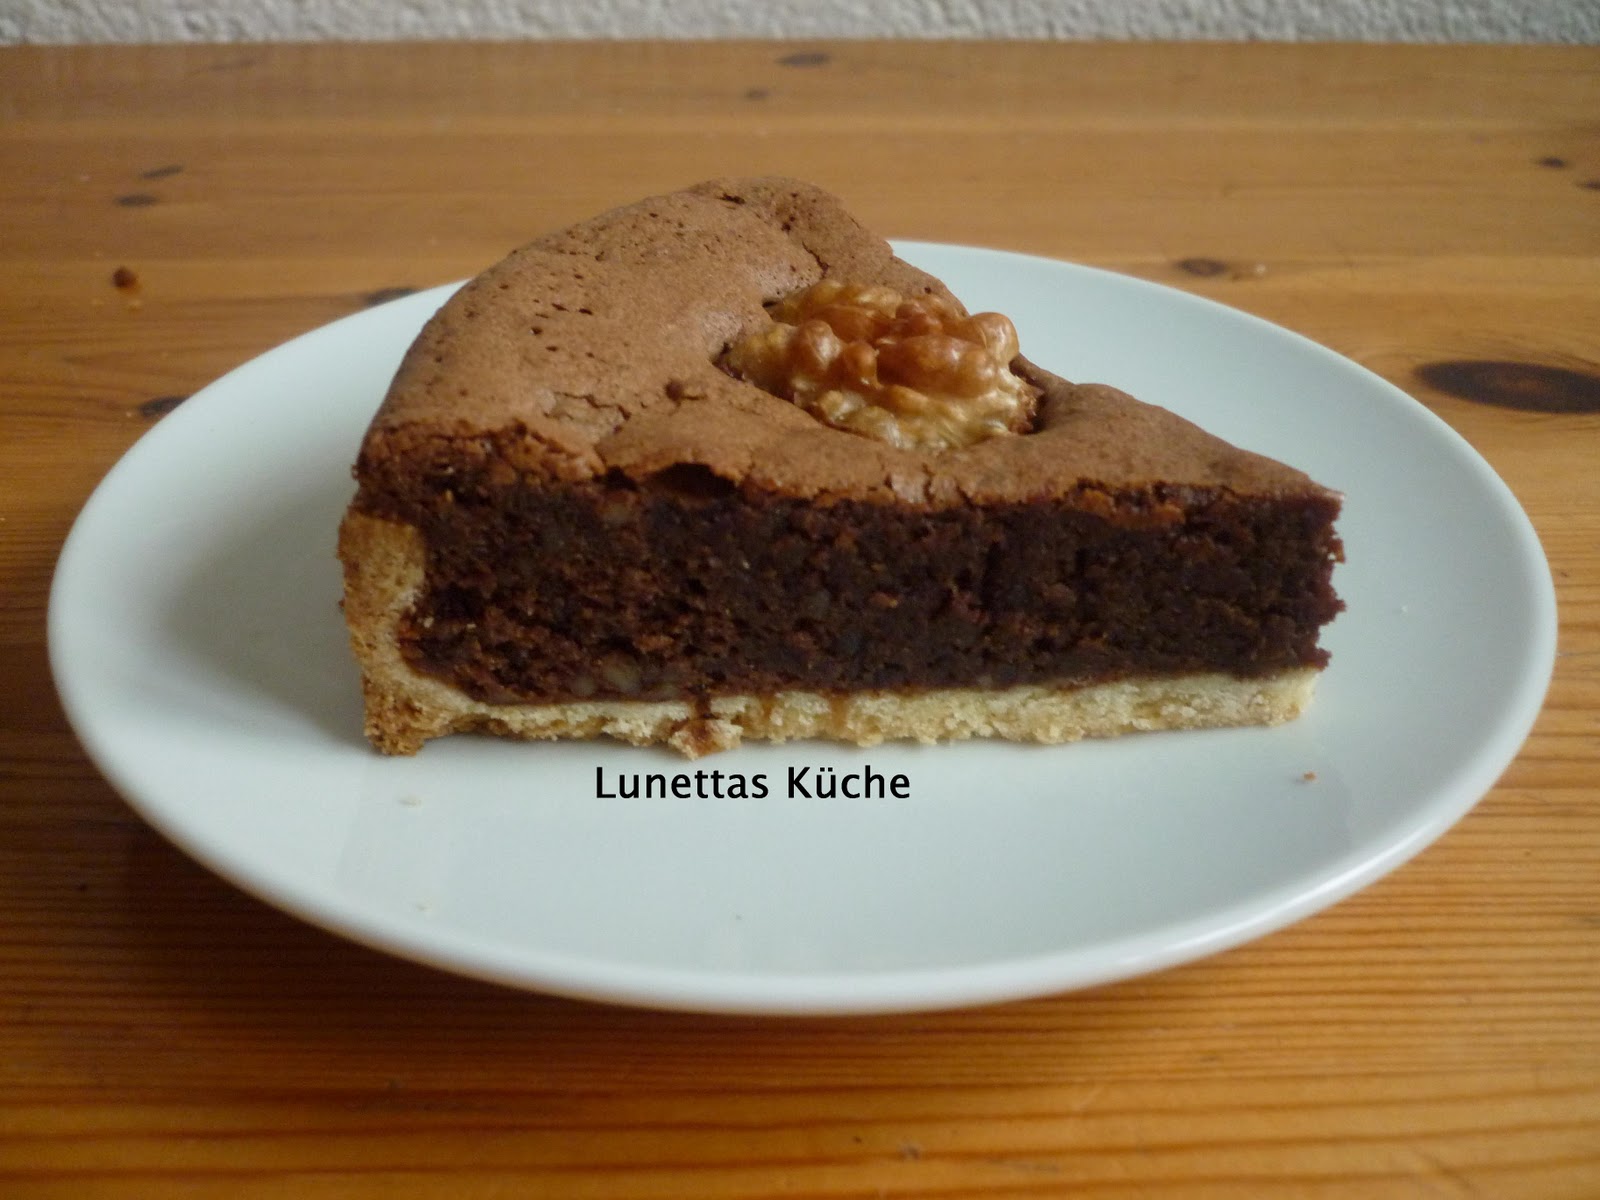 Lunettas Küche: Schoko - Walnuss - Tarte